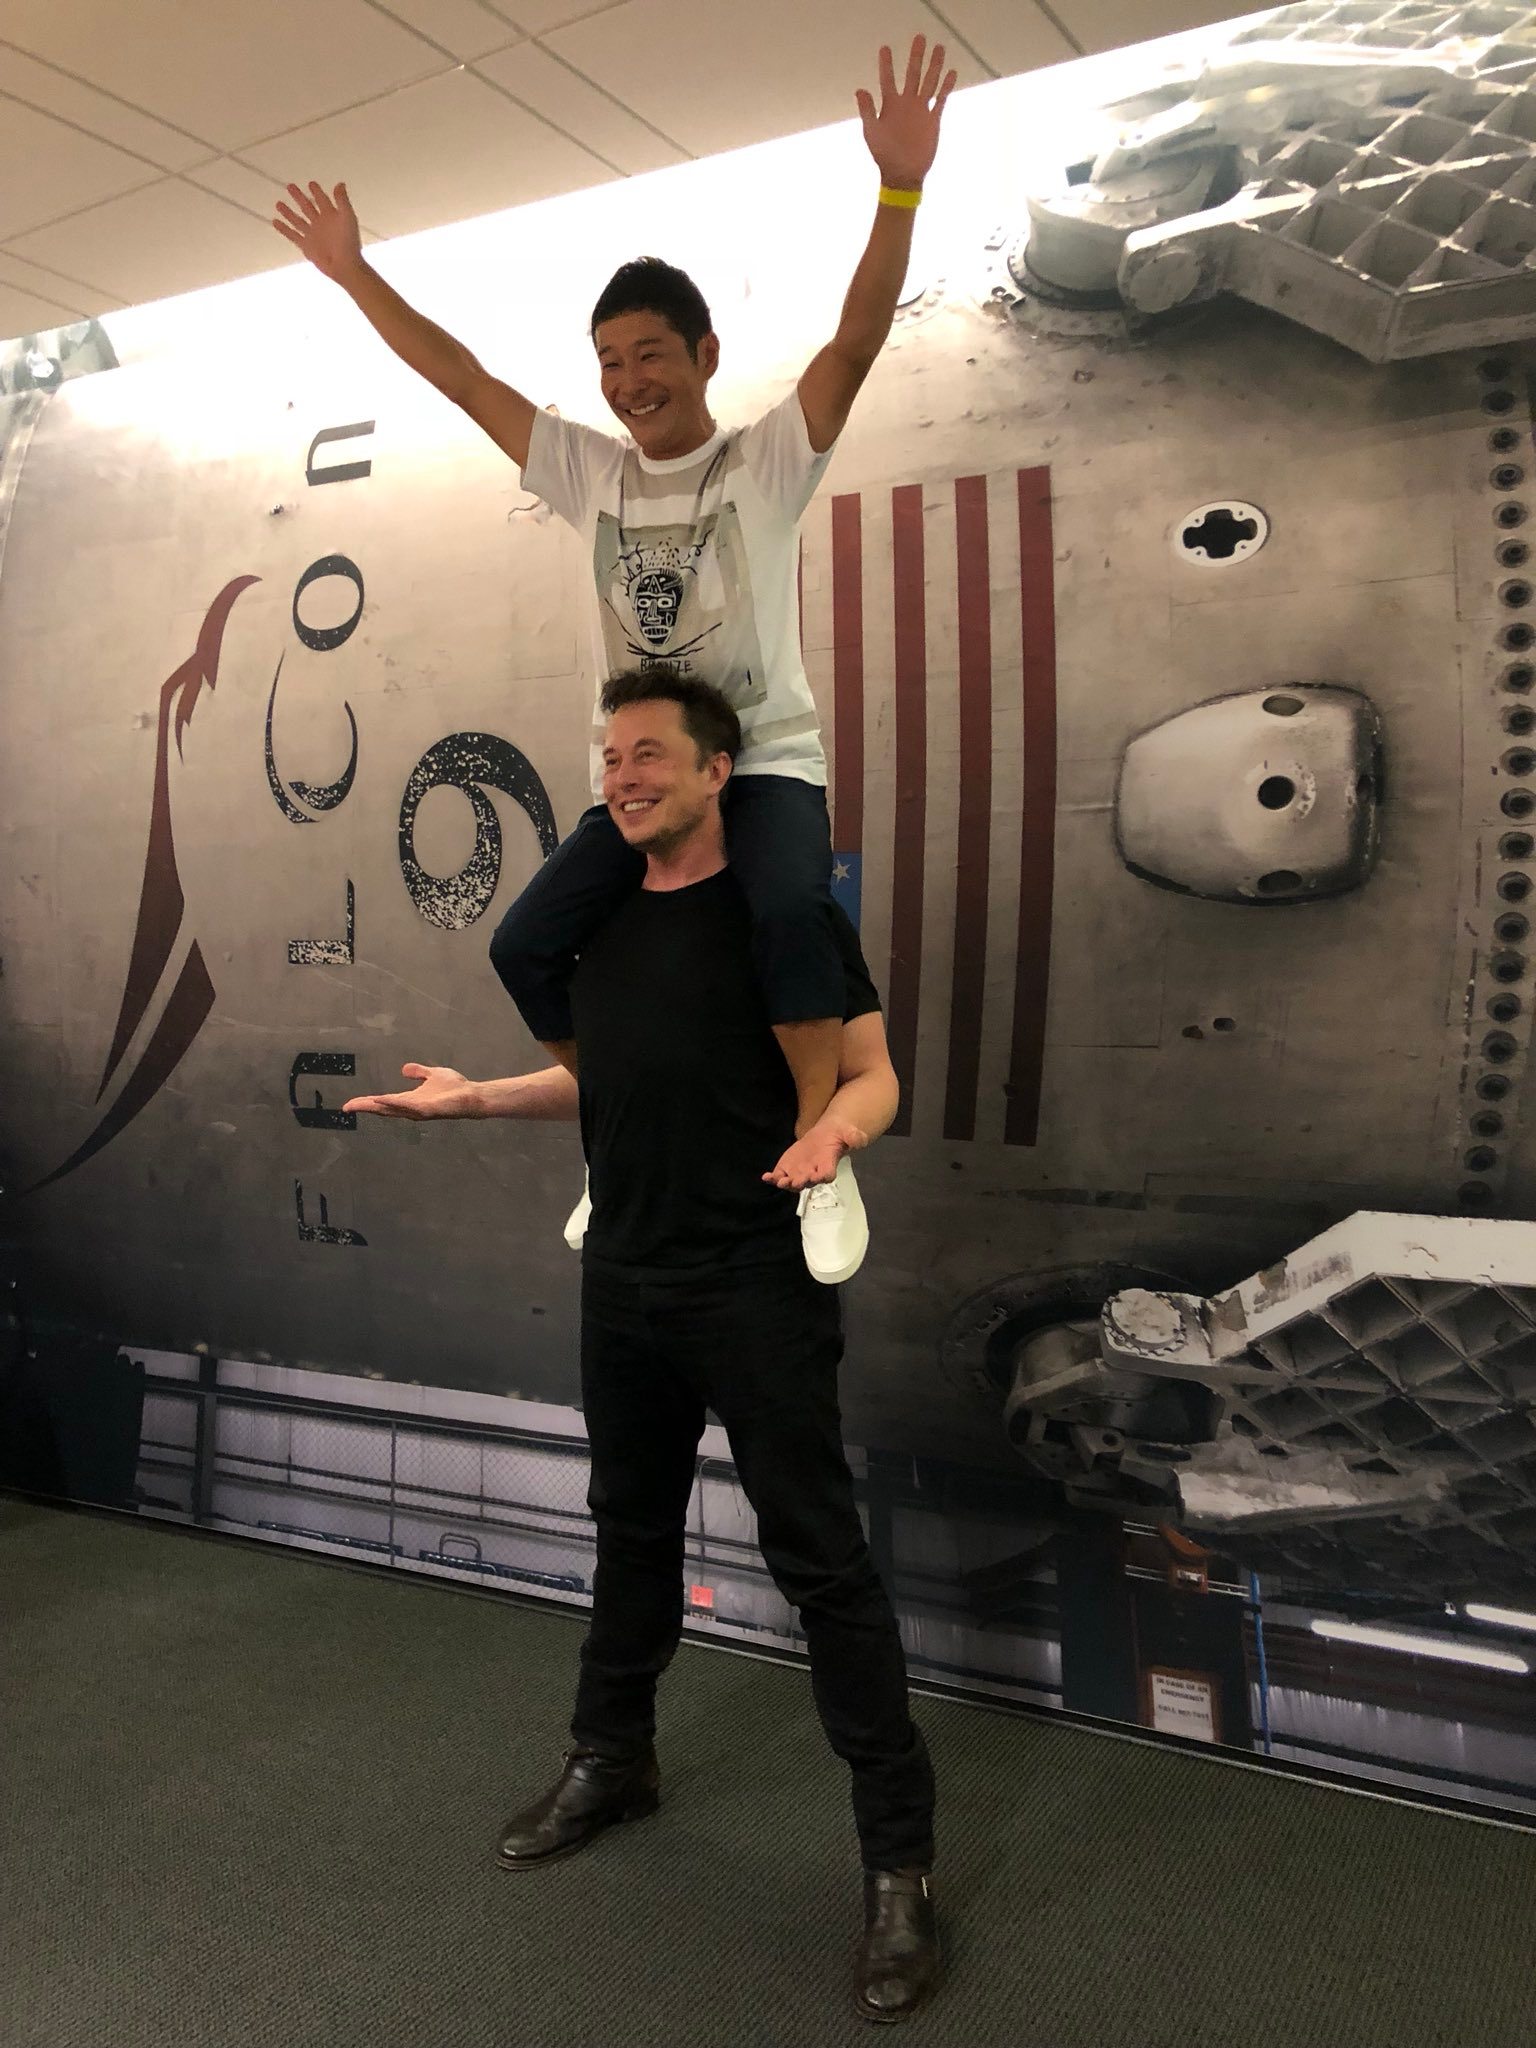 Yusaku Maezawa sur les épaules d’Elon Musk, photo parue sur Twitter.